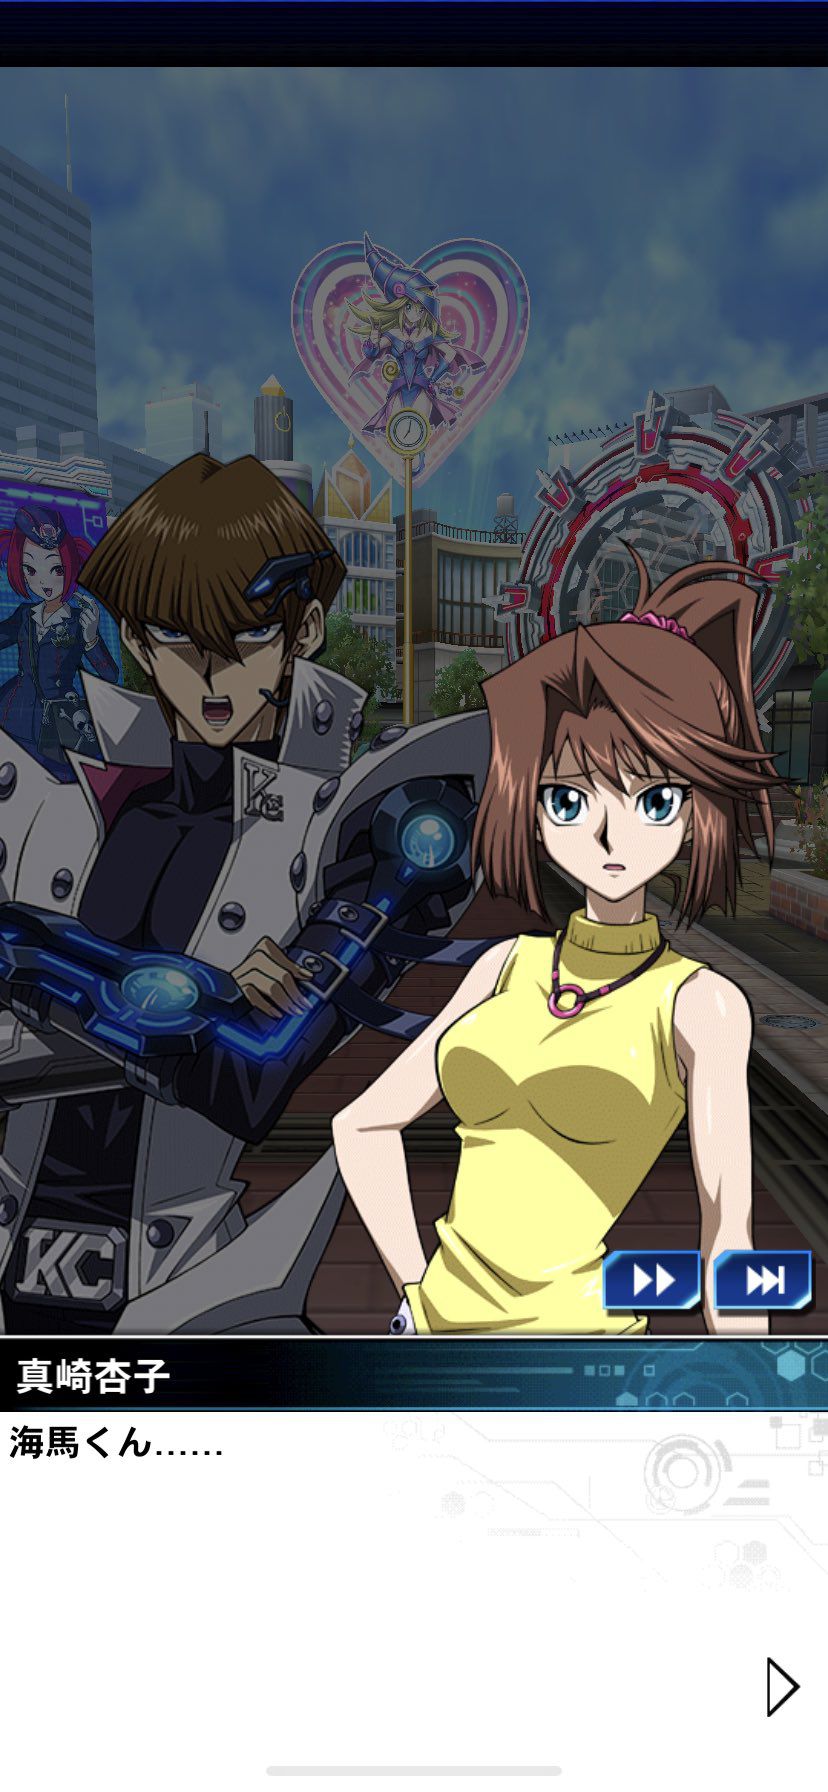 [Image] Why did Yu-Gi-Oh's Kyoko become so naughty? 9